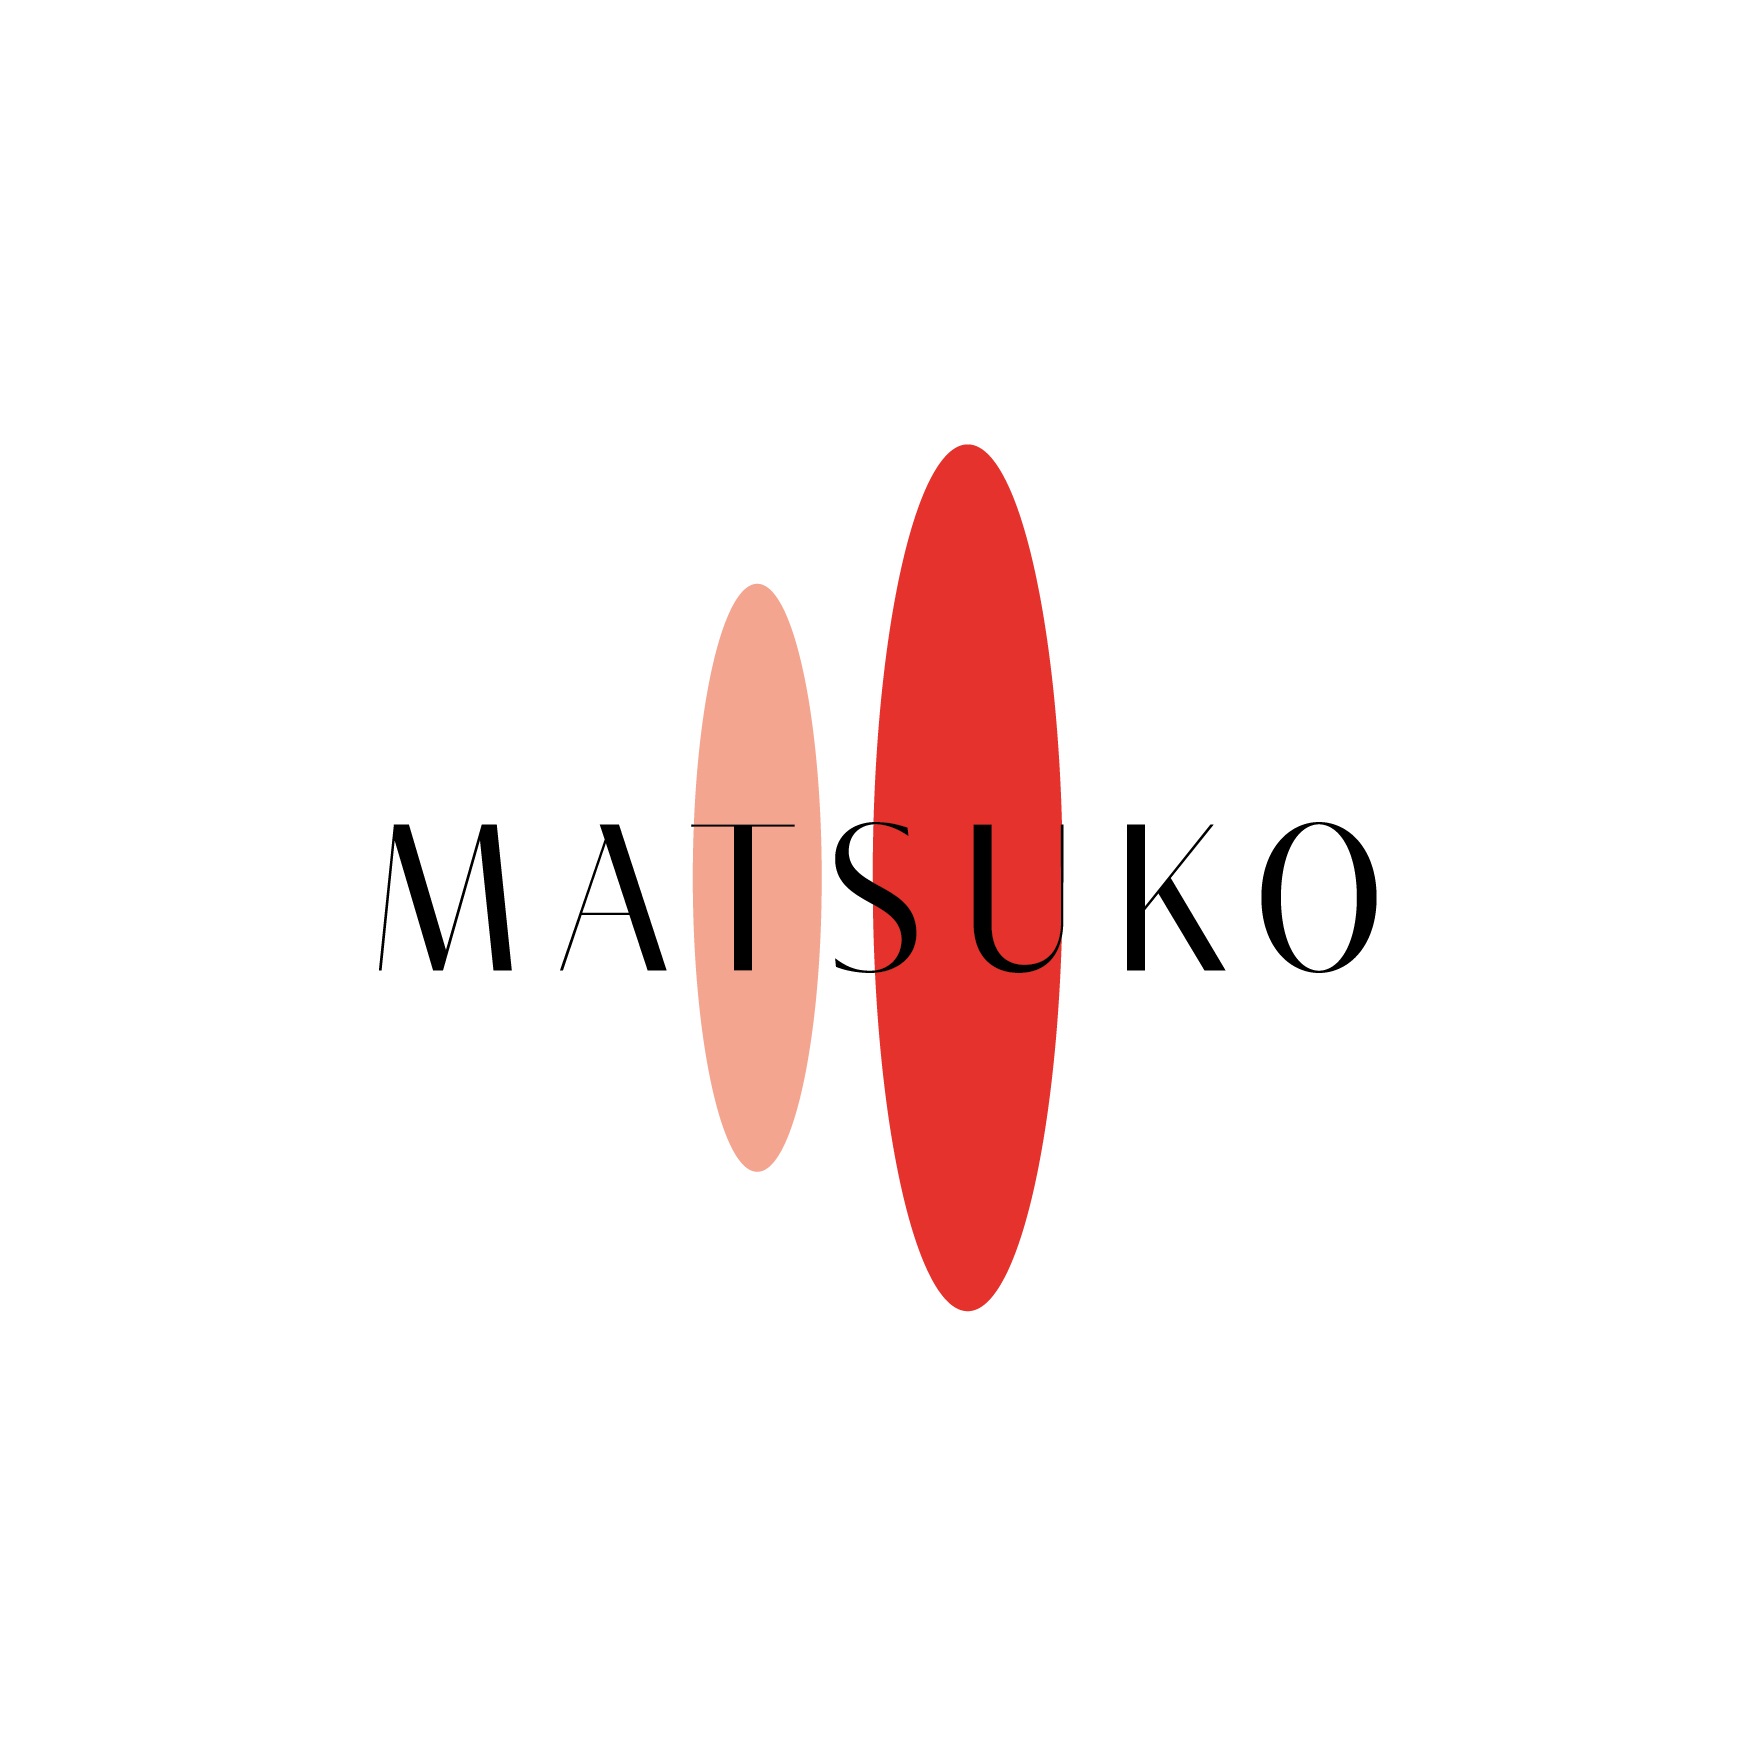 Matsuko